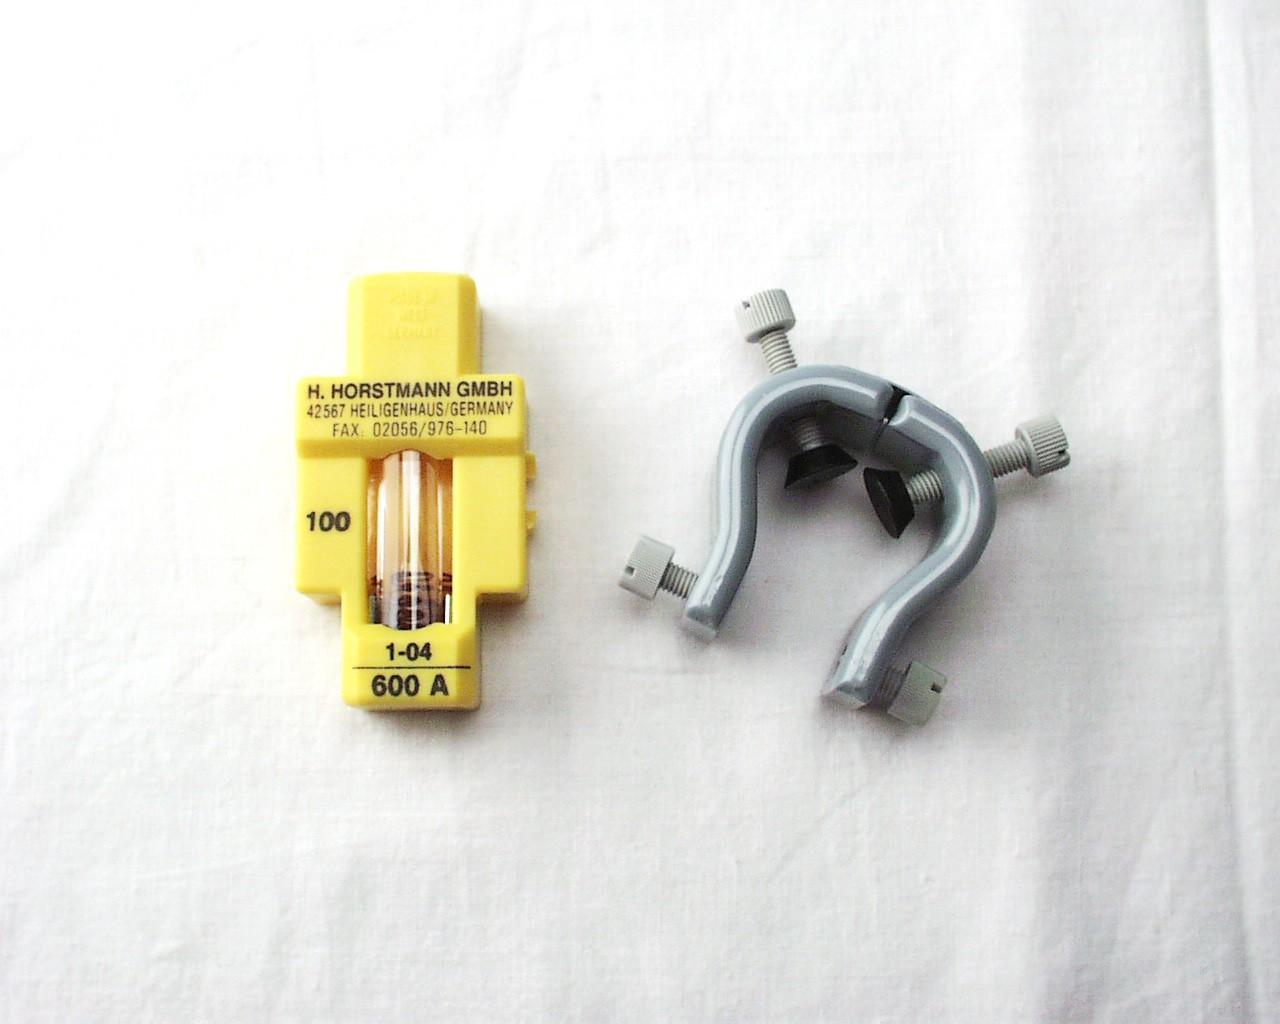 Short circuit indicator liquid Ø16-20mm 600A 100mS